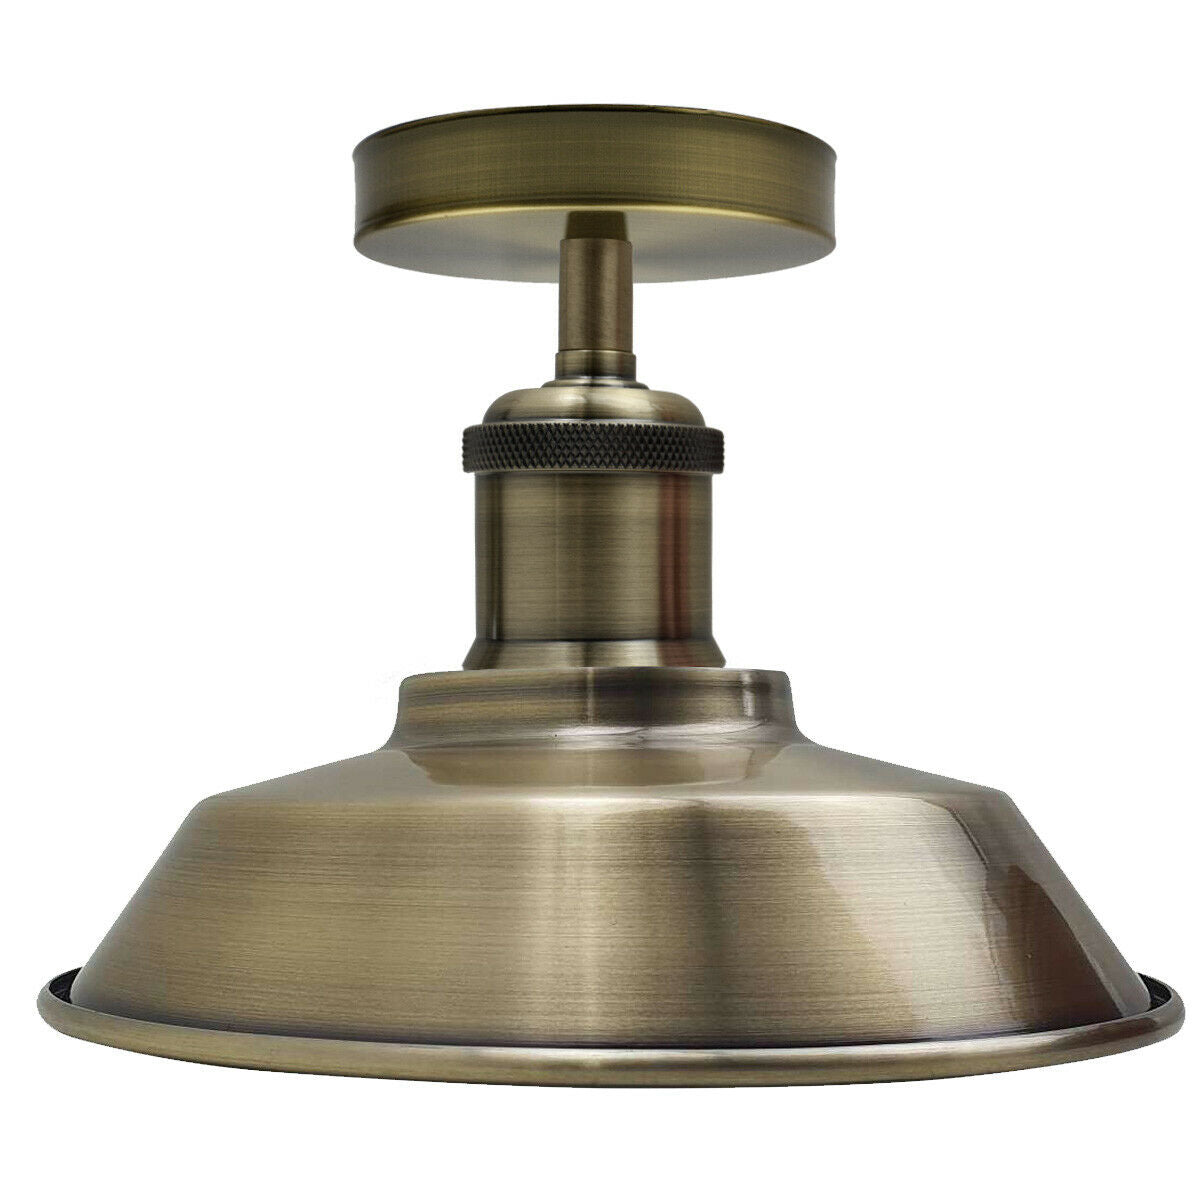 Ceiling Light Retro Flush Mount Ceiling Barn Slotted Lamp Shade Fitting Green Brass E27 holder uk~1926 - LEDSone UK Ltd